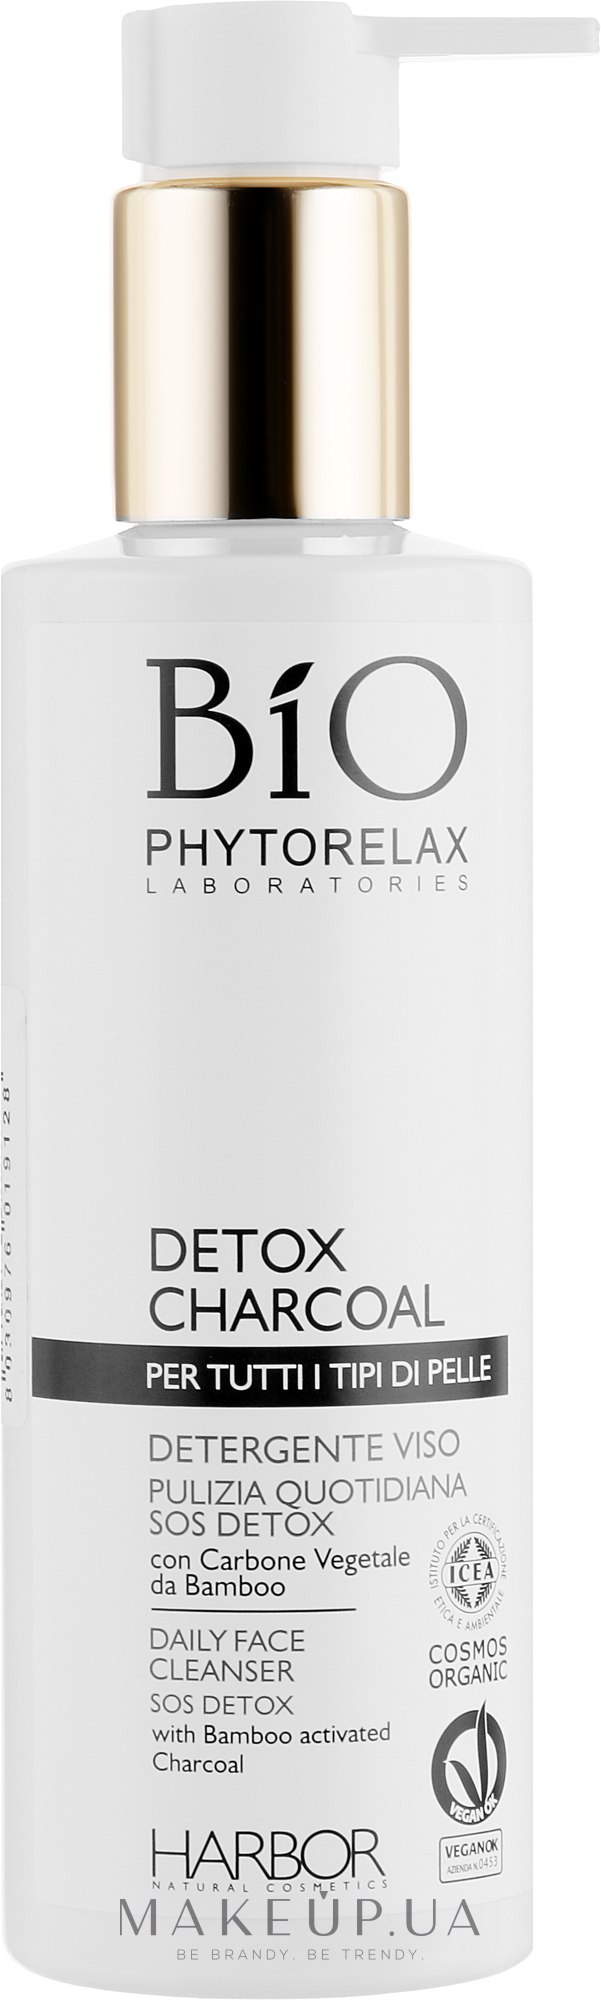 Очищающий гель для лица с активированным углем - Phytorelax Laboratories Bio Phytorelax Detox Charcoal Daily Face Cleanser Sos Detox — фото 200ml